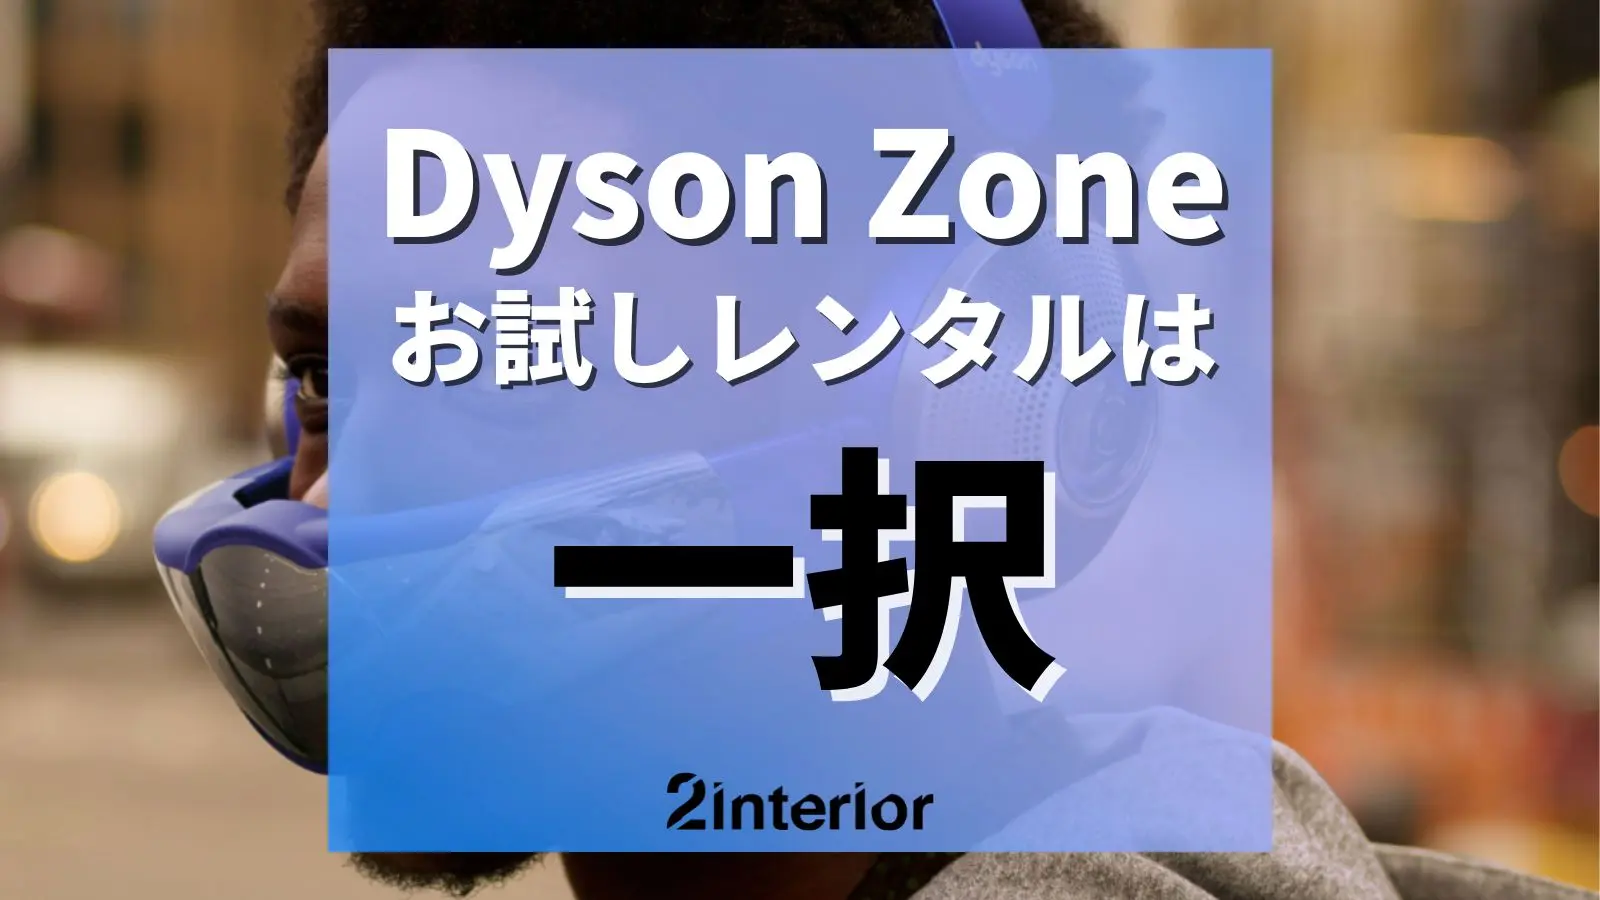 Dyson Zoneのレンタル